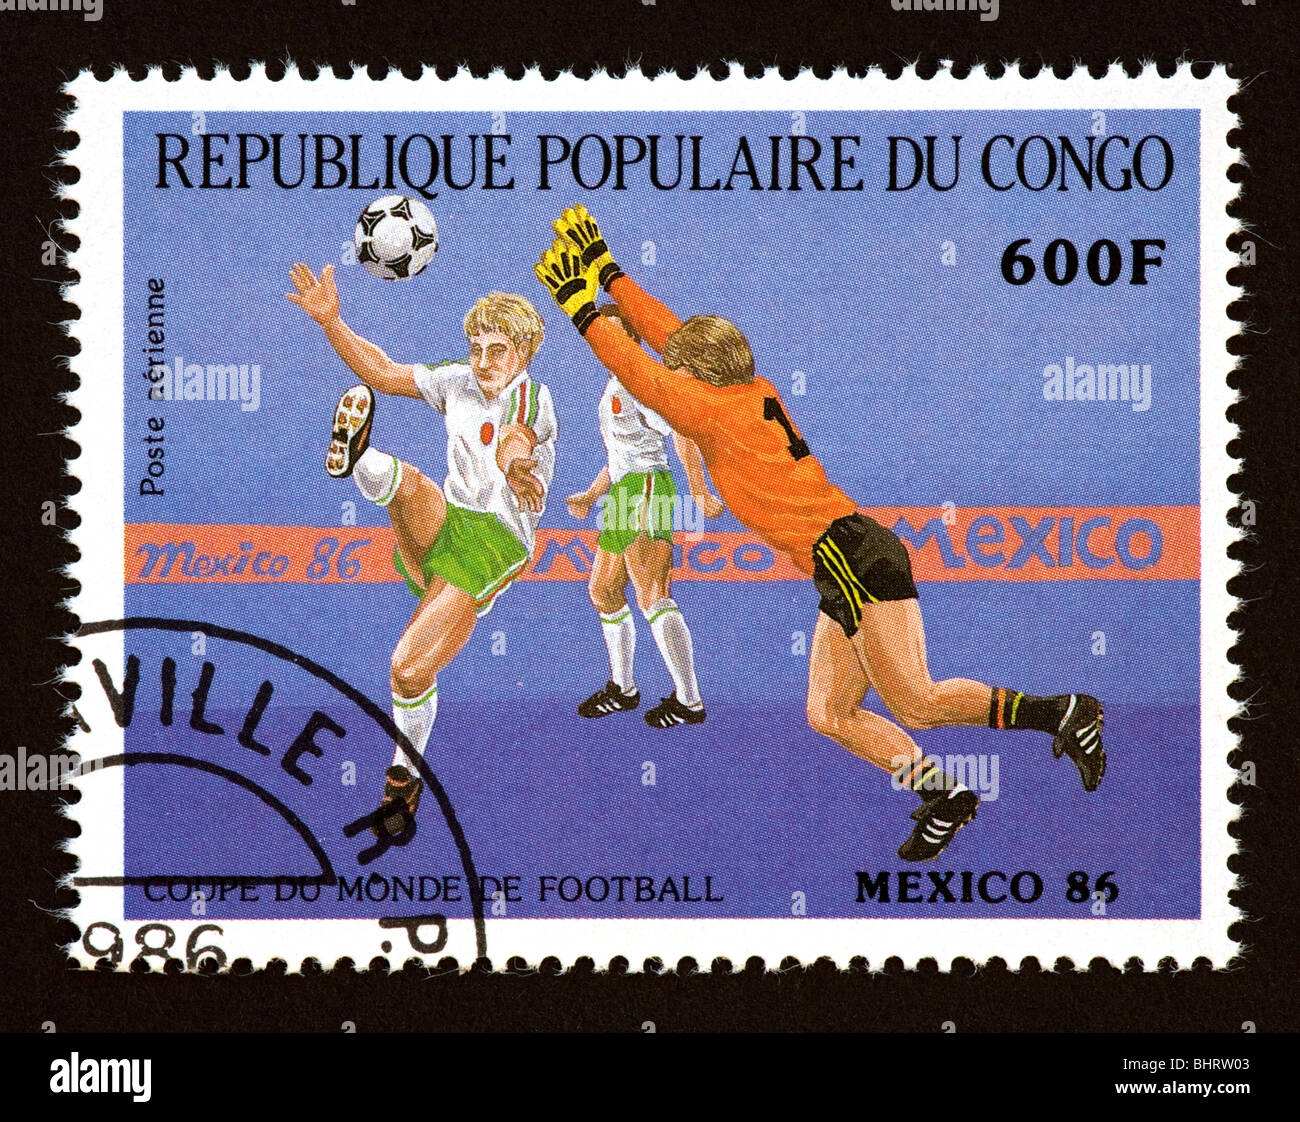 Timbre-poste du Congo République populaire illustrant le soccer, émis pour la Coupe du Monde 1986 à Mexico, Mexique. Banque D'Images